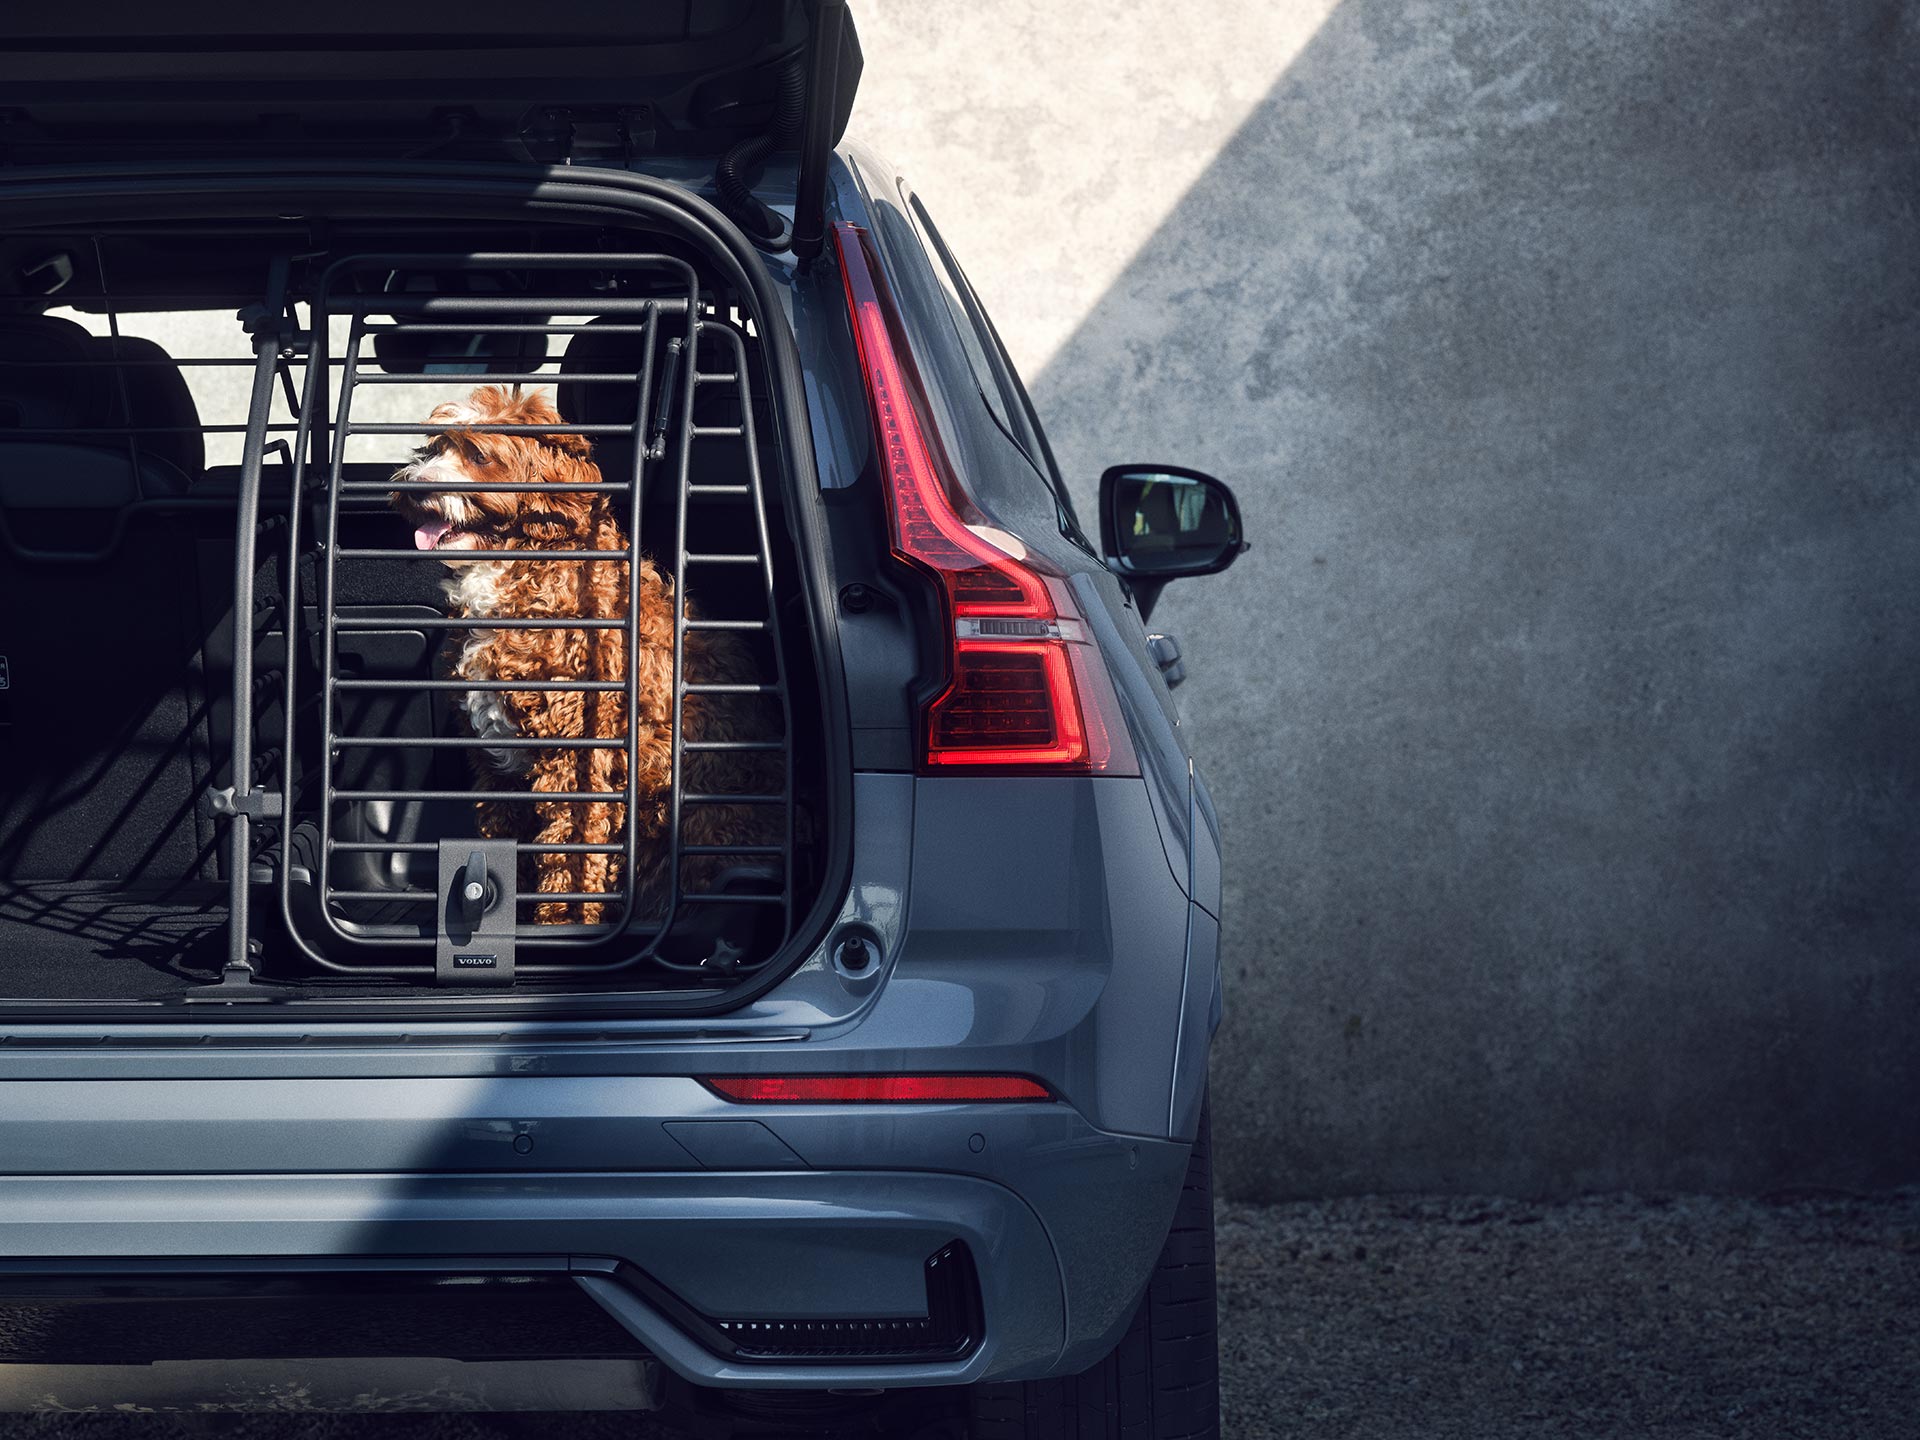 Un chien beige est assis dans une cage sécurisée, un accessoire spécialement conçu pour la sécurité et le confort des animaux domestiques transportés dans les Volvo.